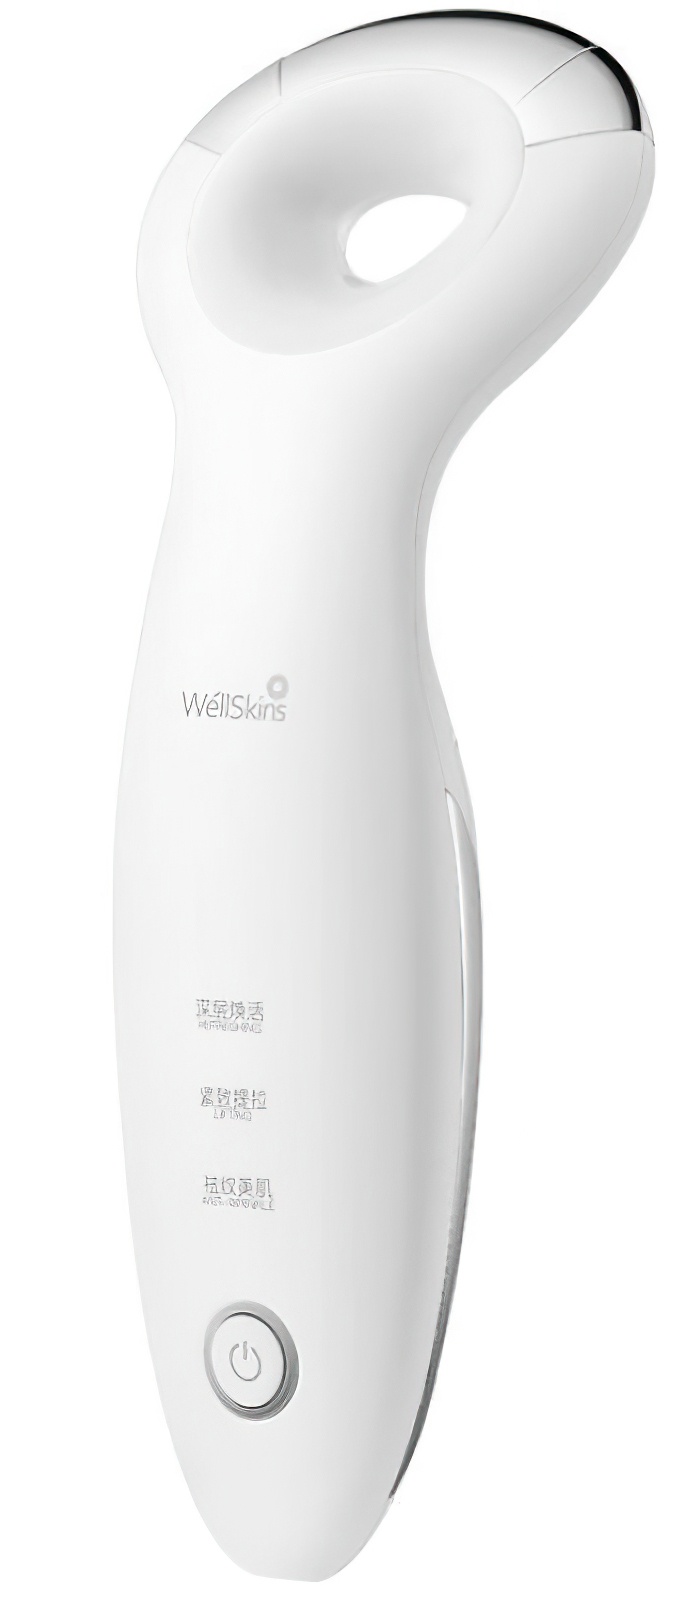 фото Аппарат для омоложения лица xiaomi wellskins instrument of wrinkles (wx-mj809)